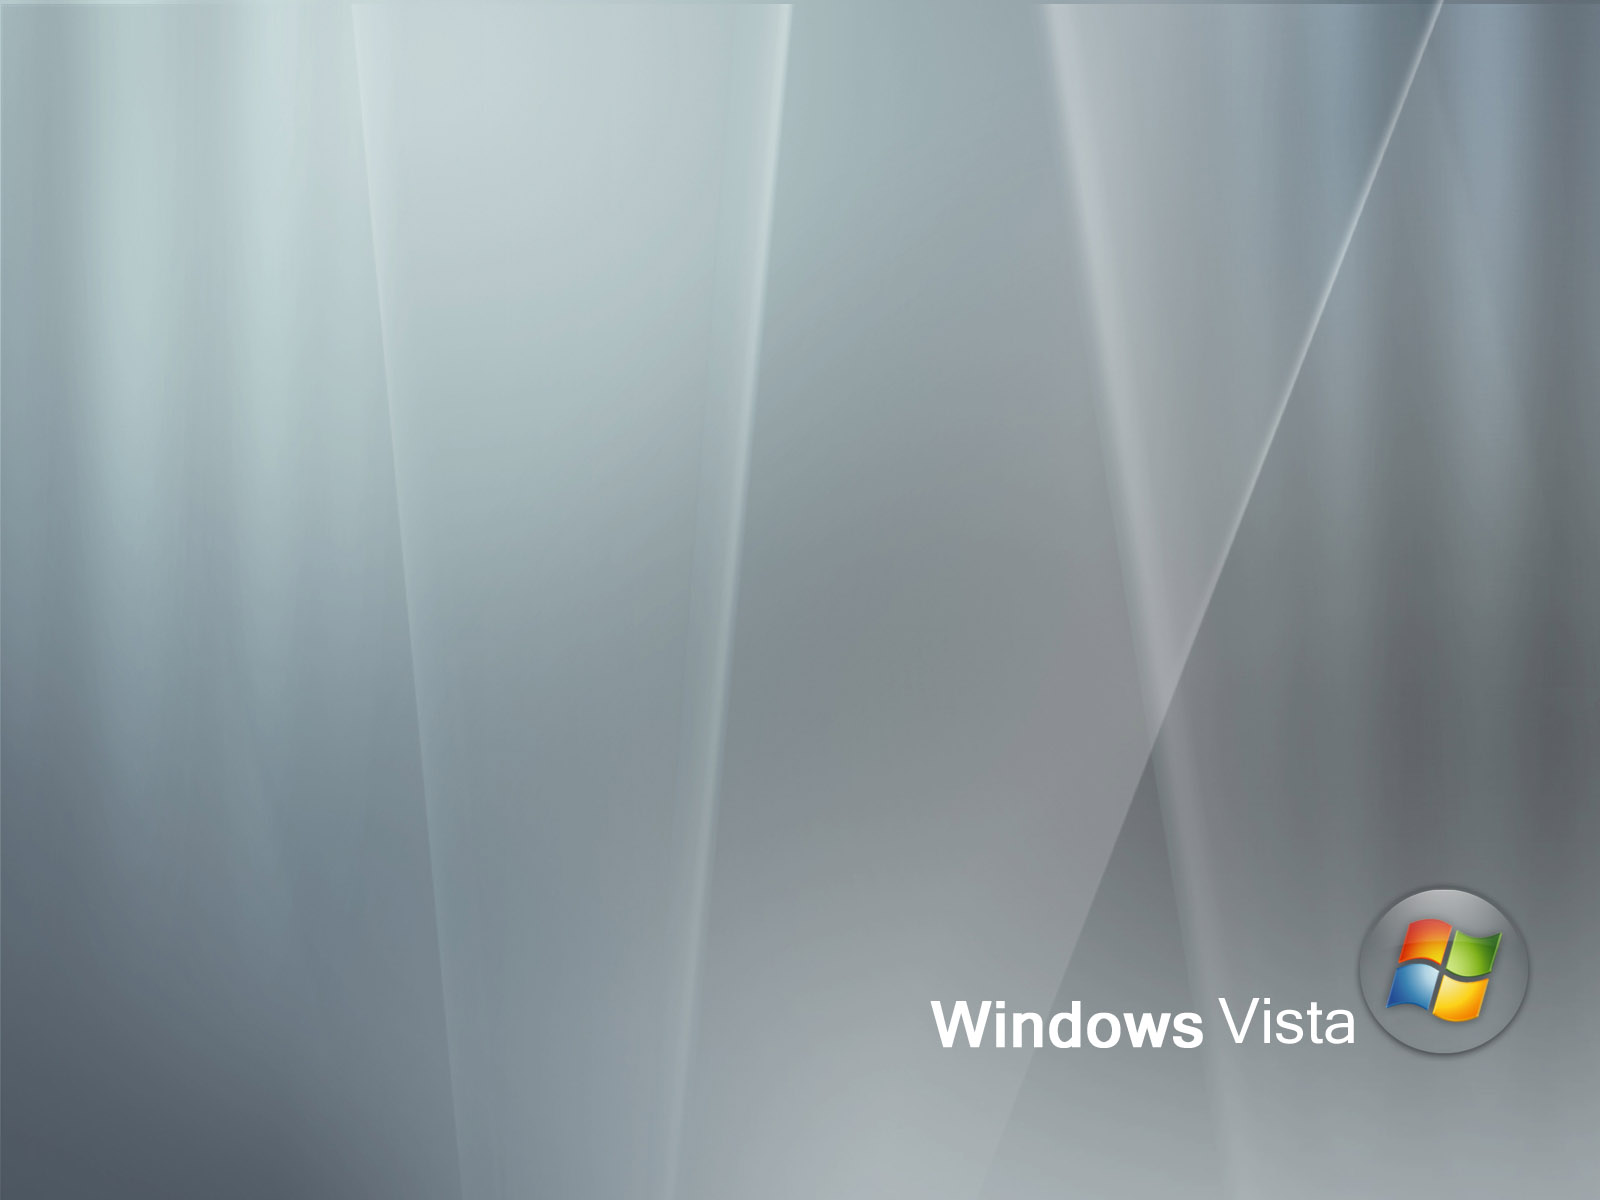 壁纸1600x1200超高分辨率Windows Vista简约壁纸壁纸 超高分辨率Windows Vista简约壁纸壁纸 超高分辨率Windows Vista简约壁纸图片 超高分辨率Windows Vista简约壁纸素材 创意壁纸 创意图库 创意图片素材桌面壁纸